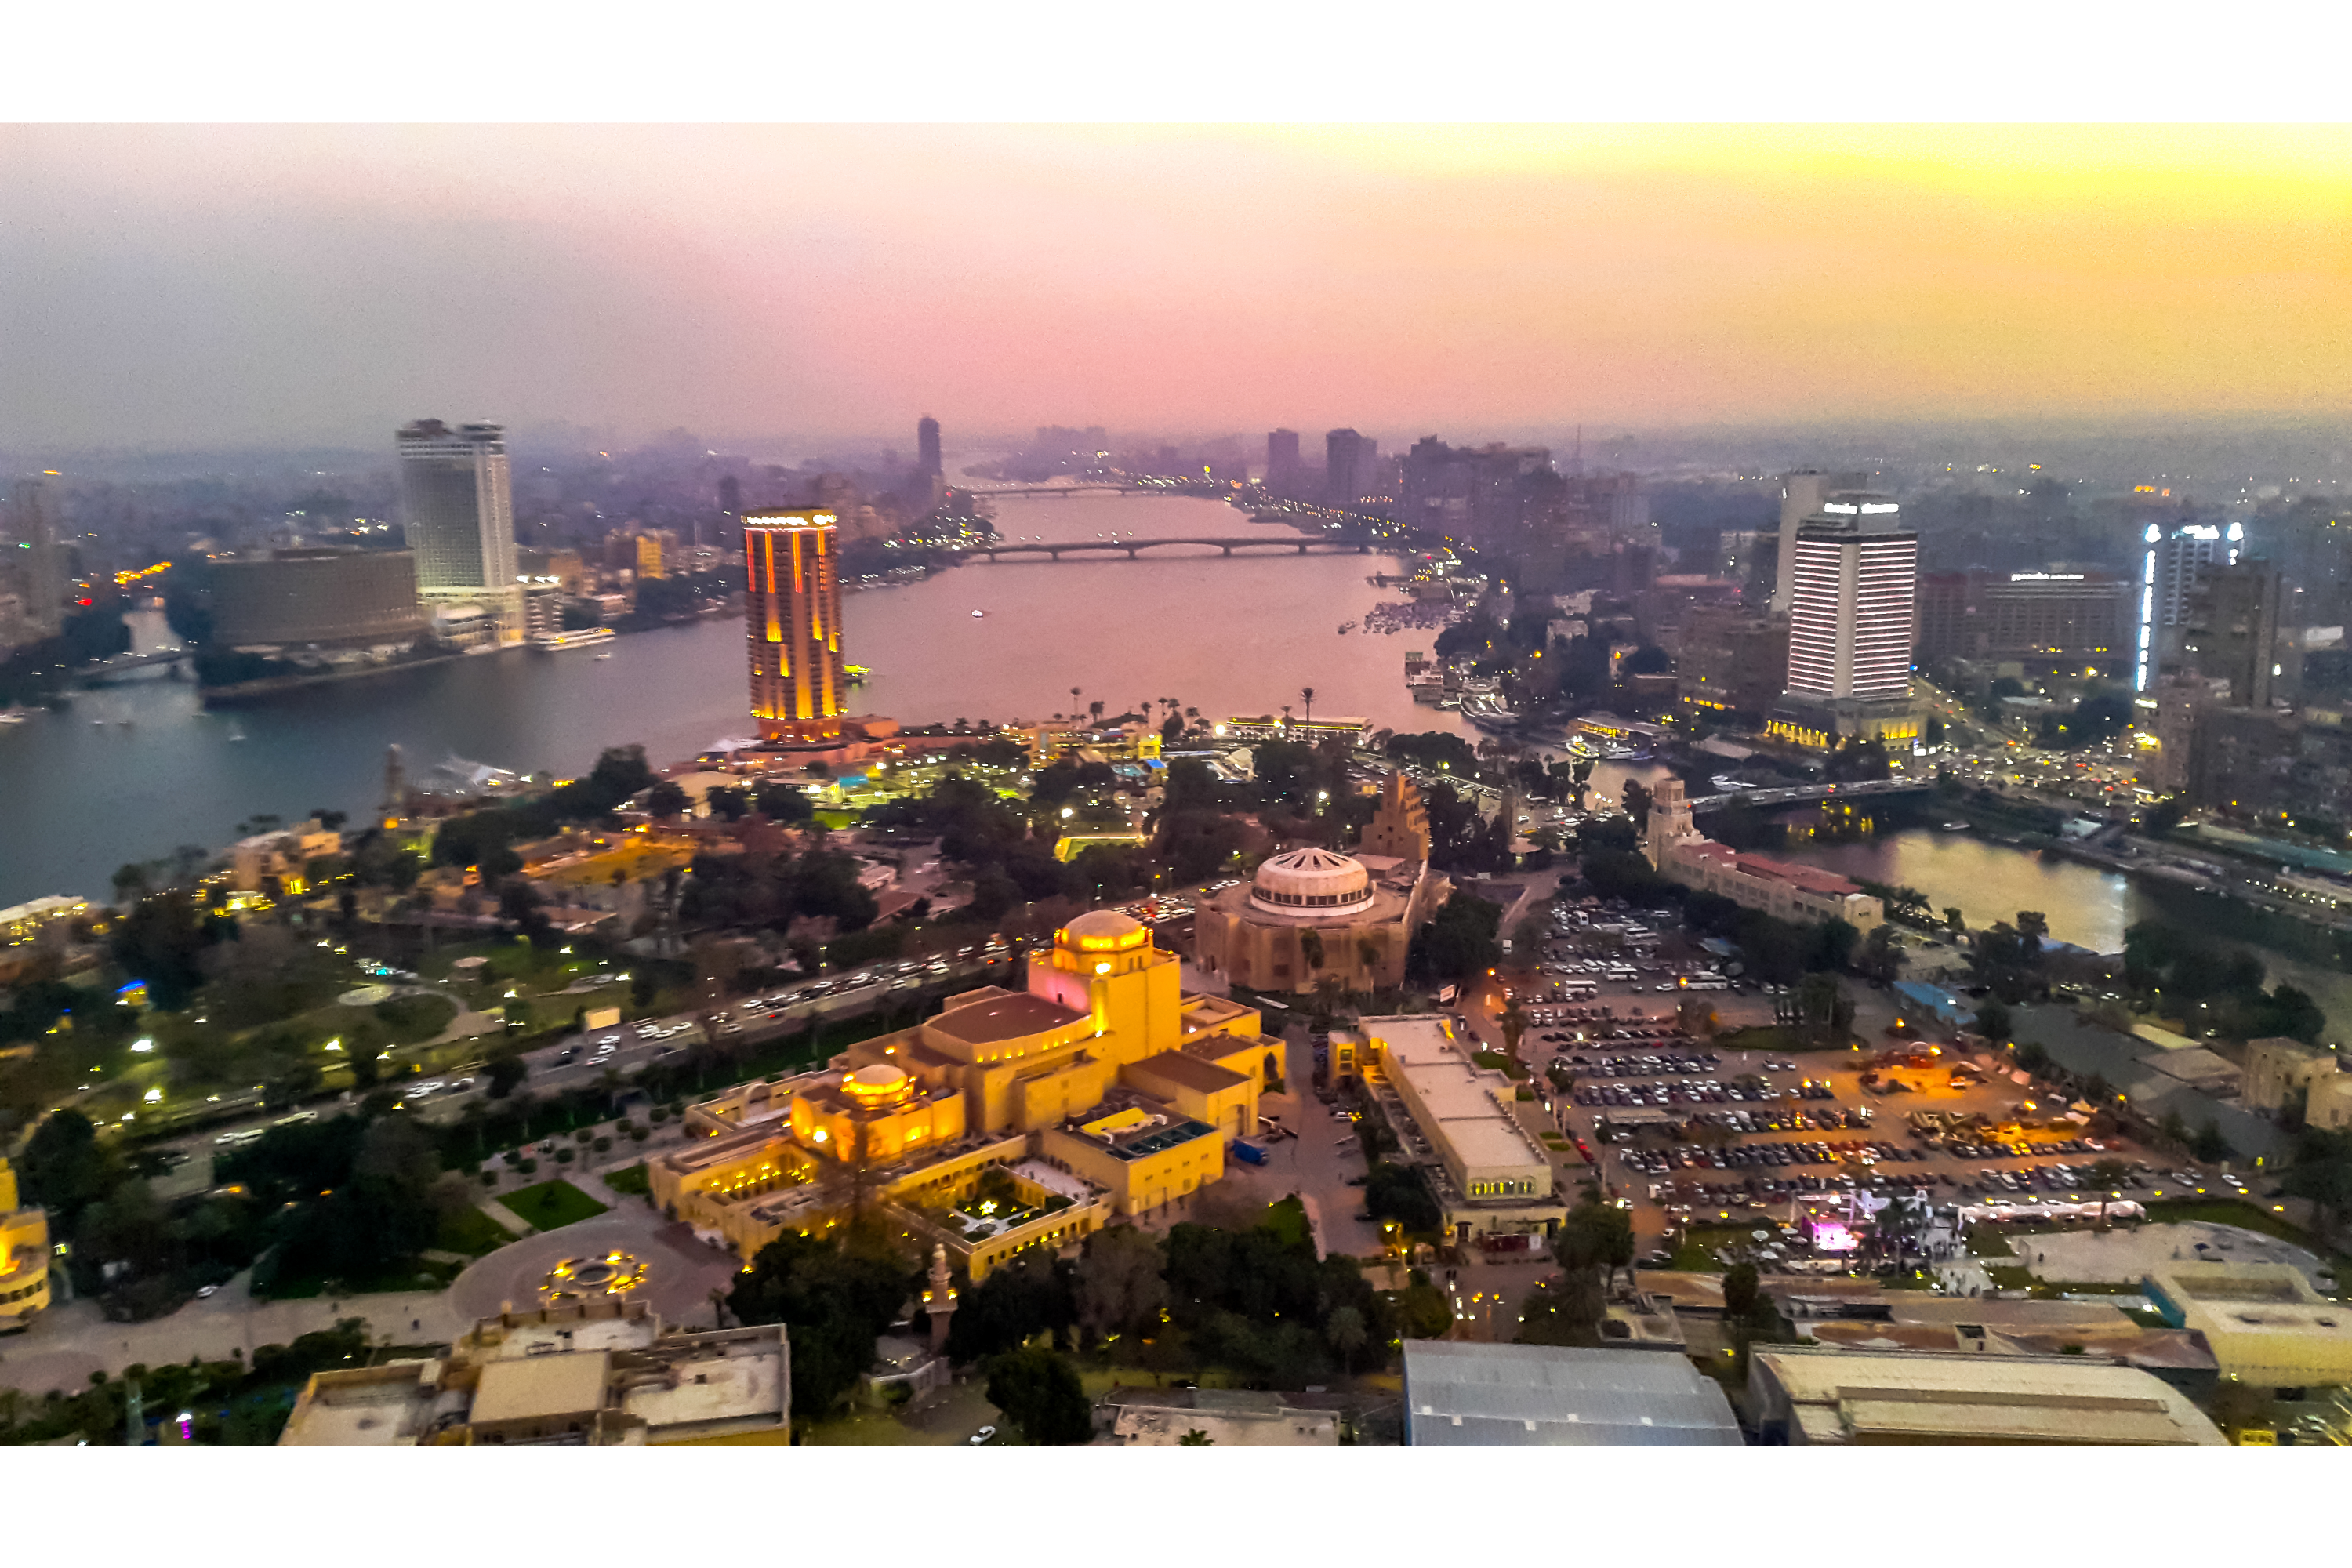 Day 2 Cairo